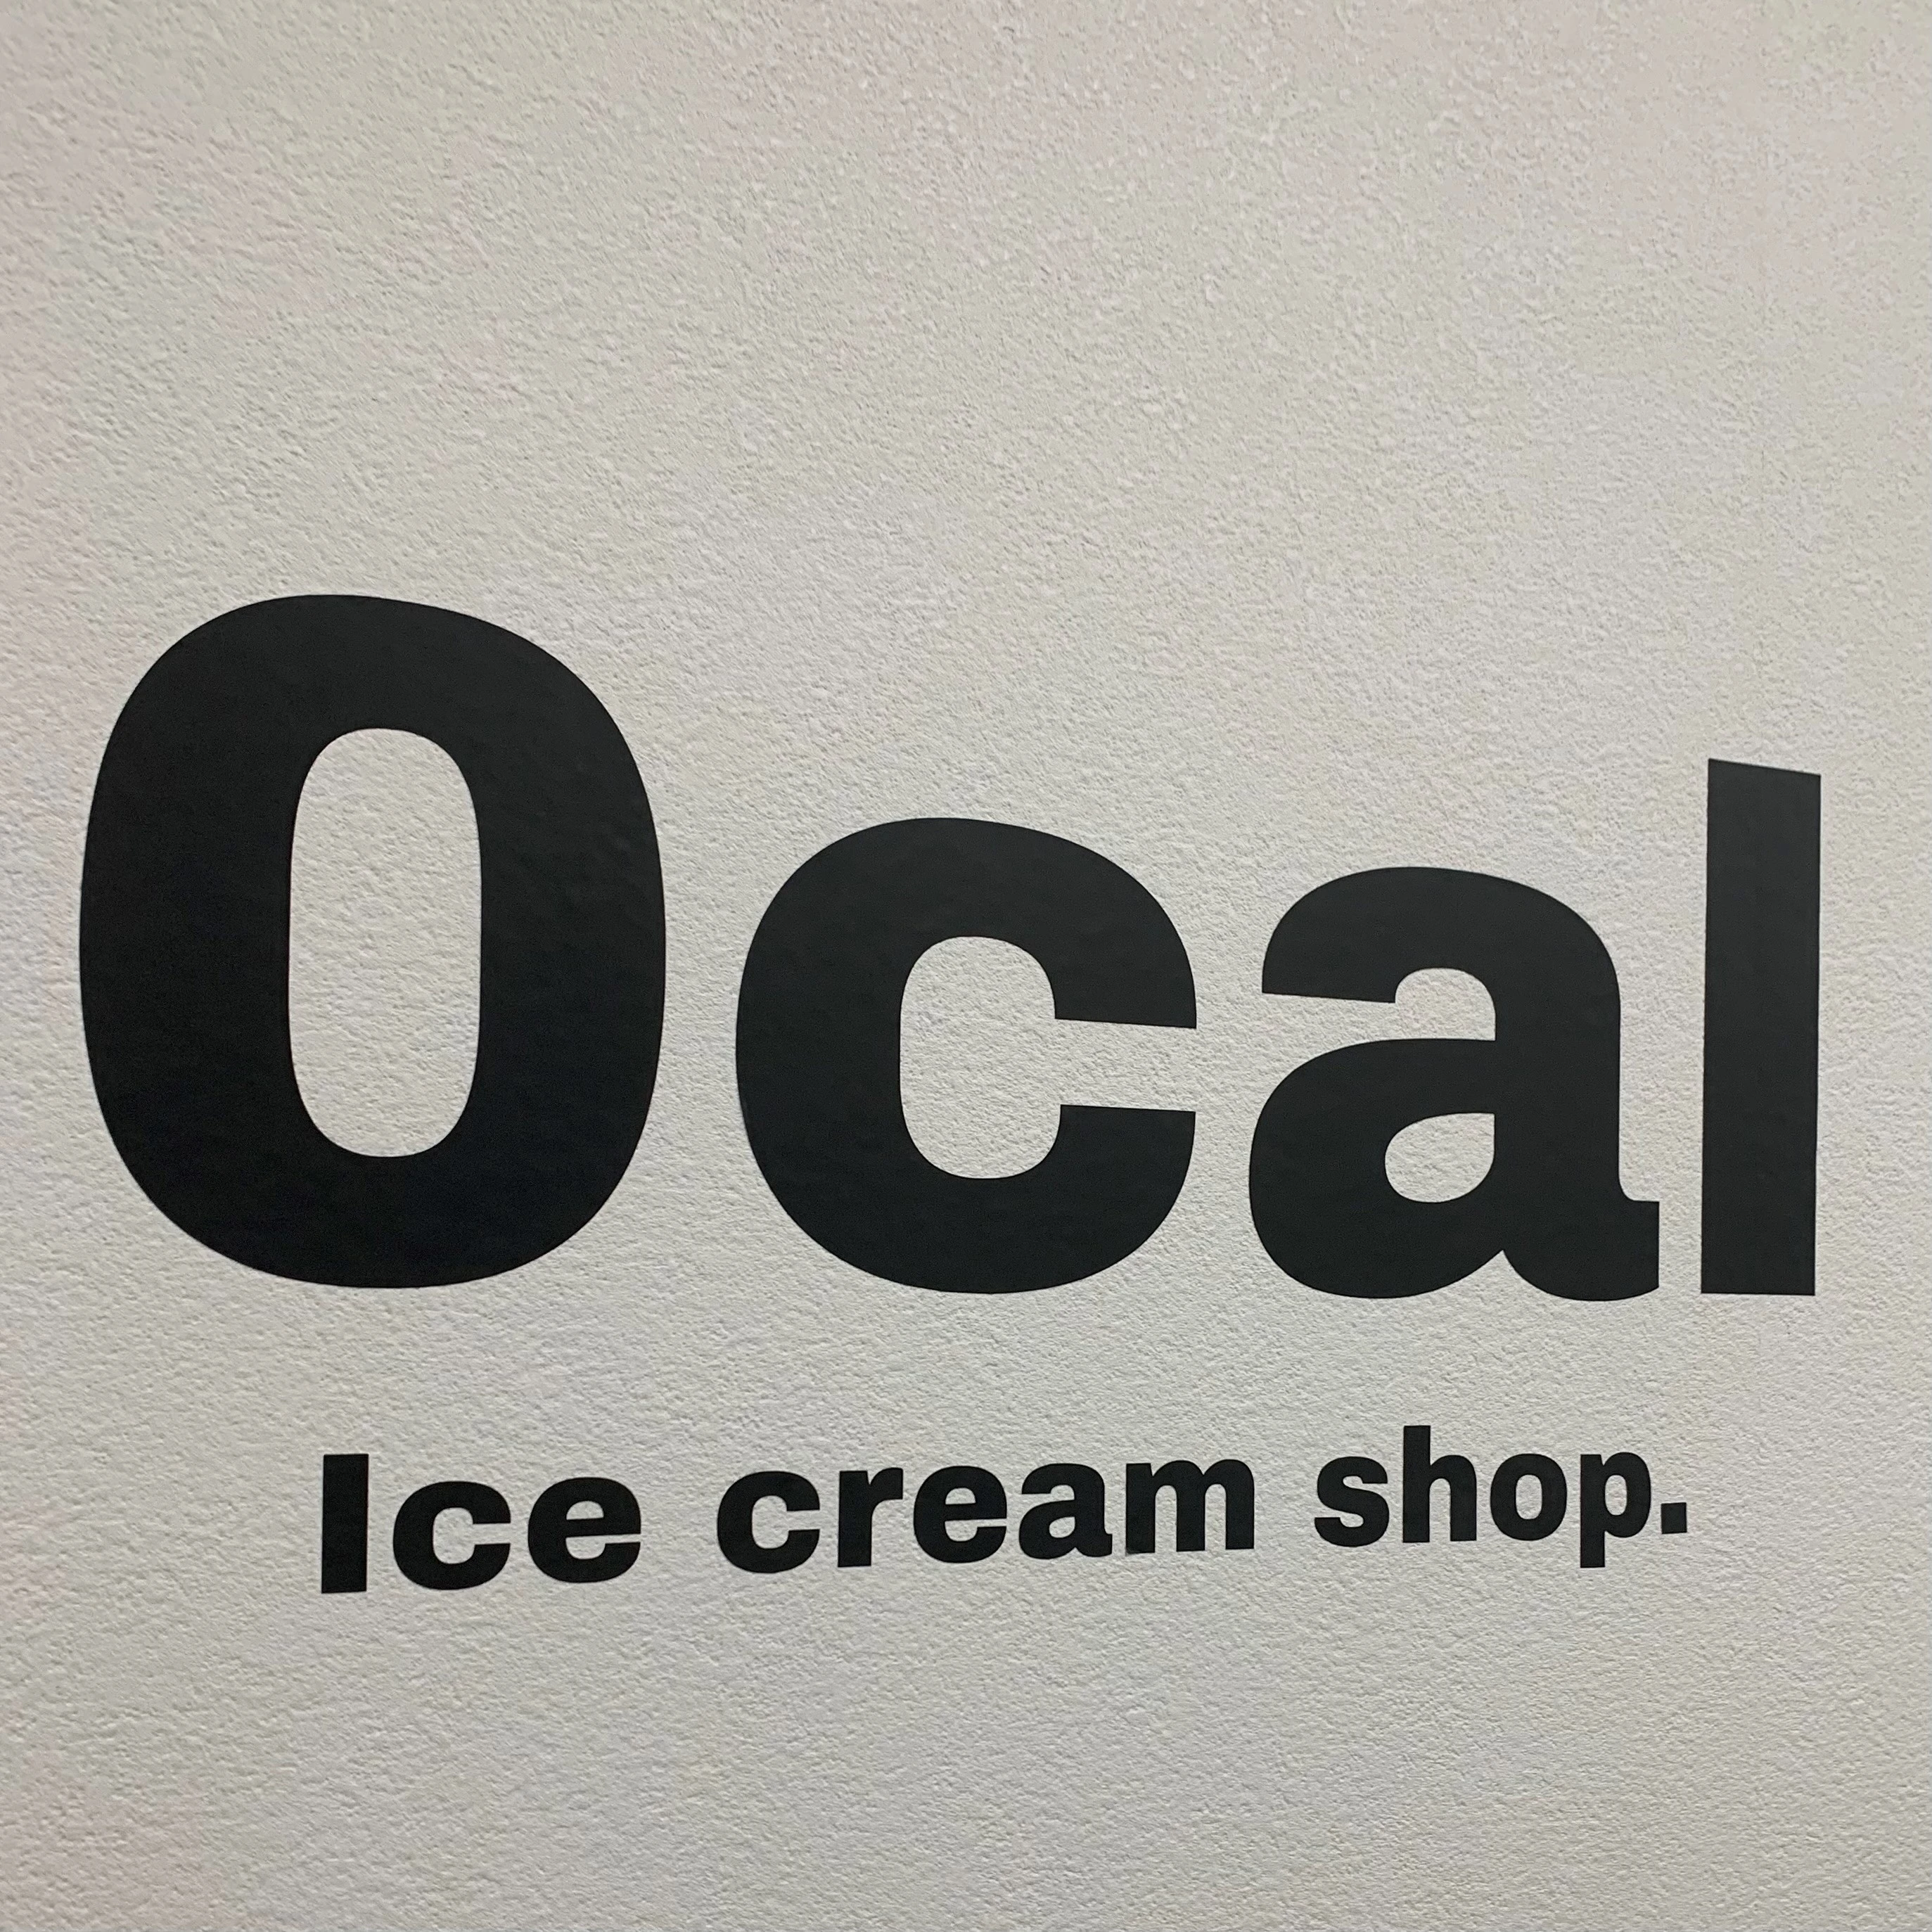 【話題の「夜アイス専門店」に行ってみた‼】0cal/ダイエットは明日から_1_1